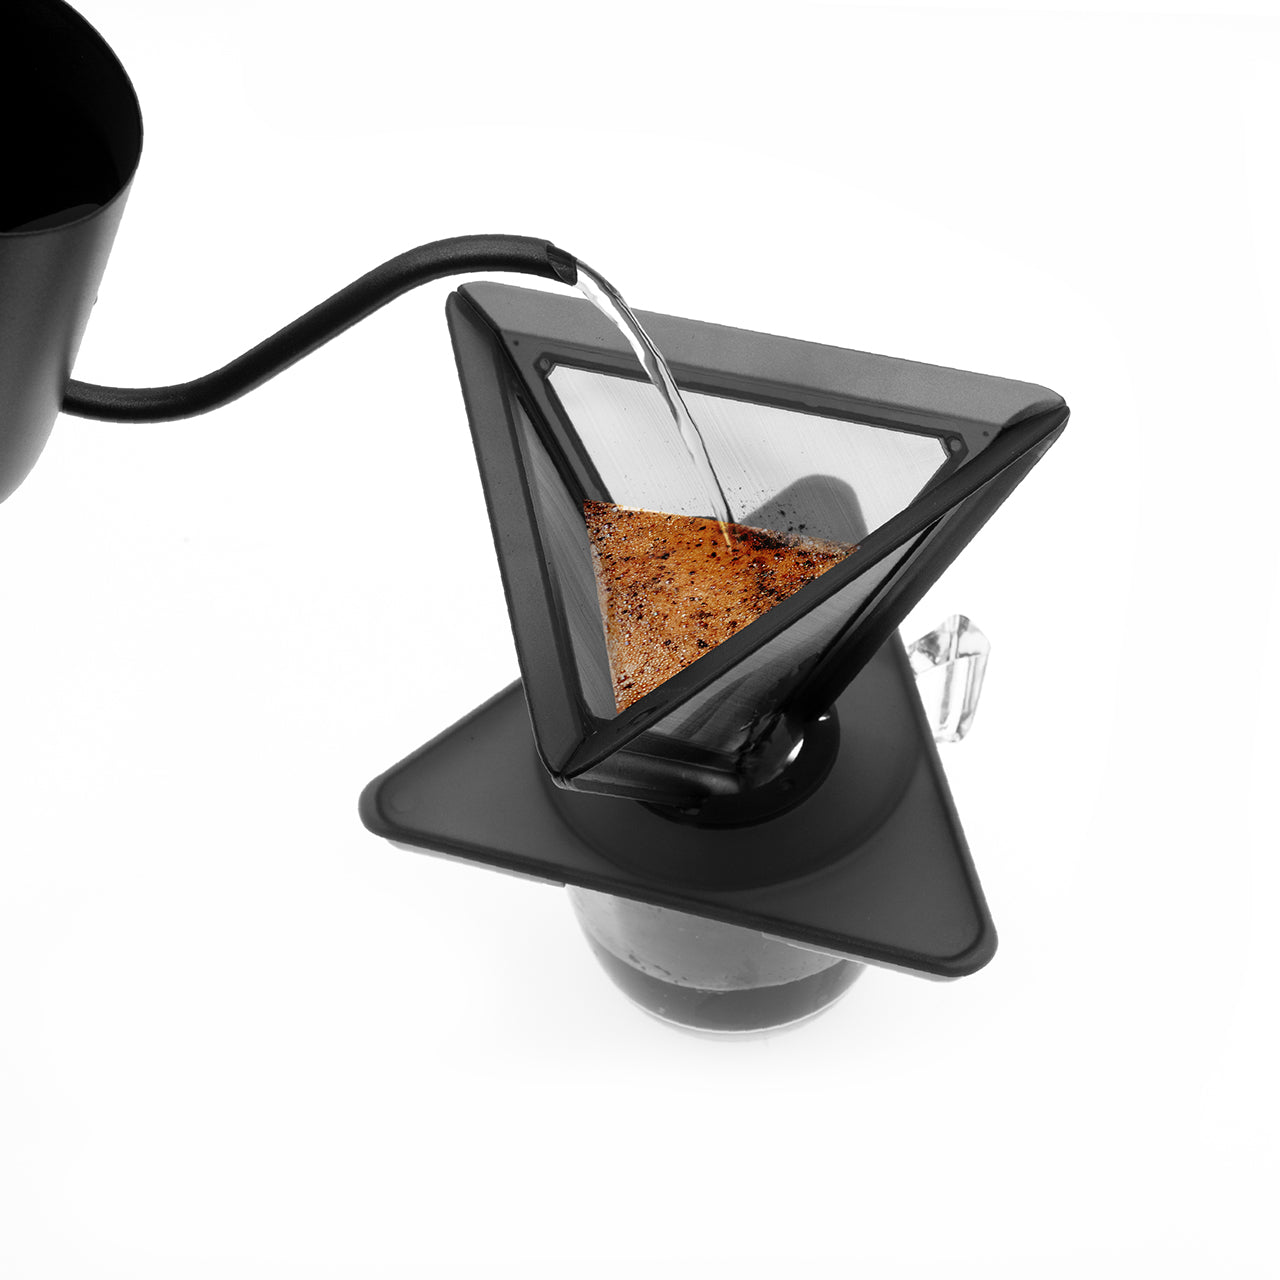 Coreflex Portable Pour Over Coffee Dripper